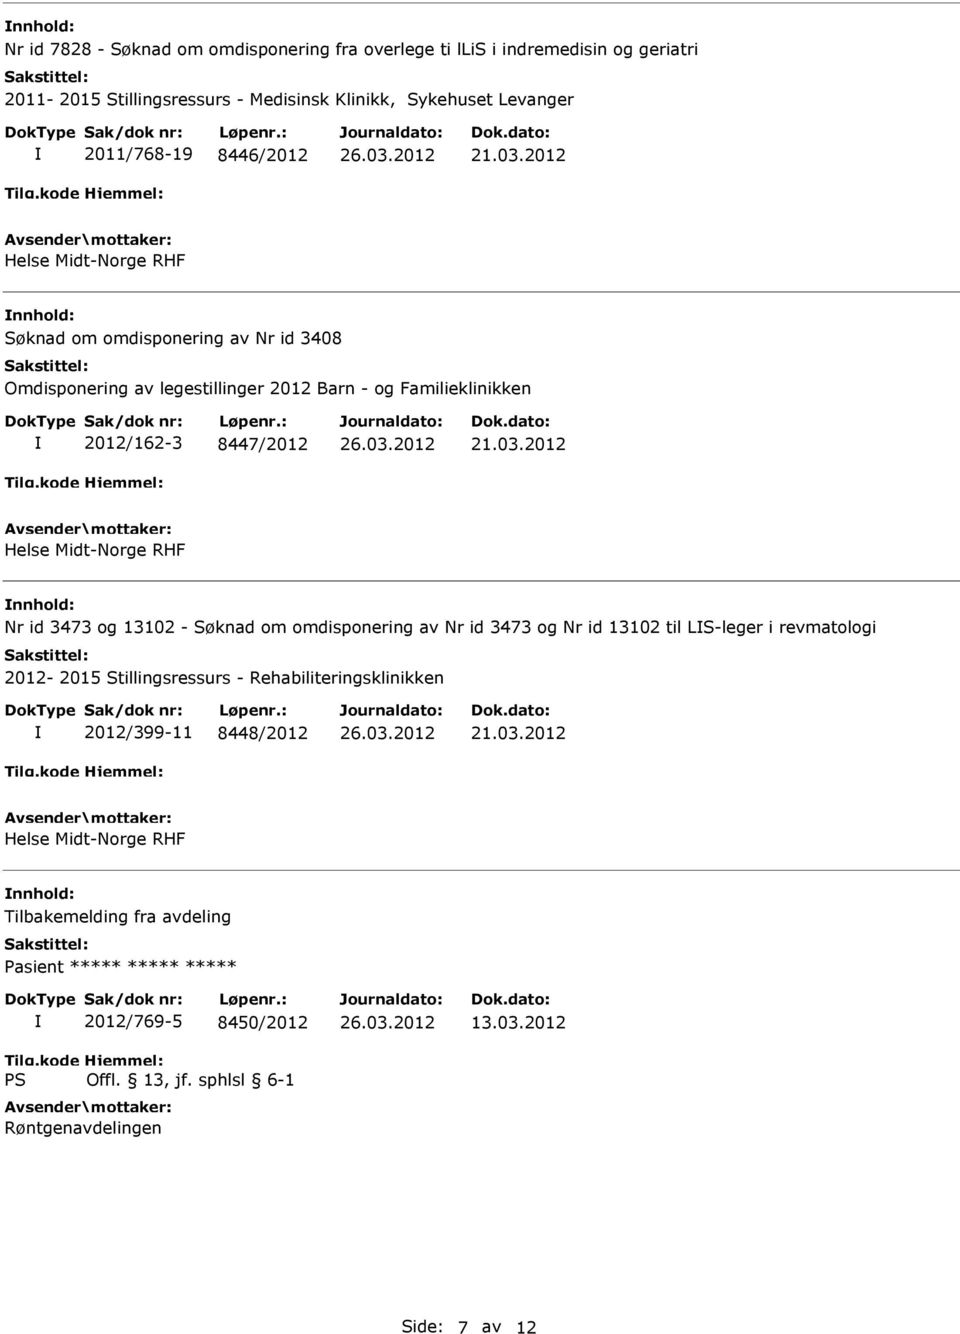 8447/2012 Helse Midt-Norge RHF Nr id 3473 og 13102 - Søknad om omdisponering av Nr id 3473 og Nr id 13102 til LS-leger i revmatologi 2012-2015